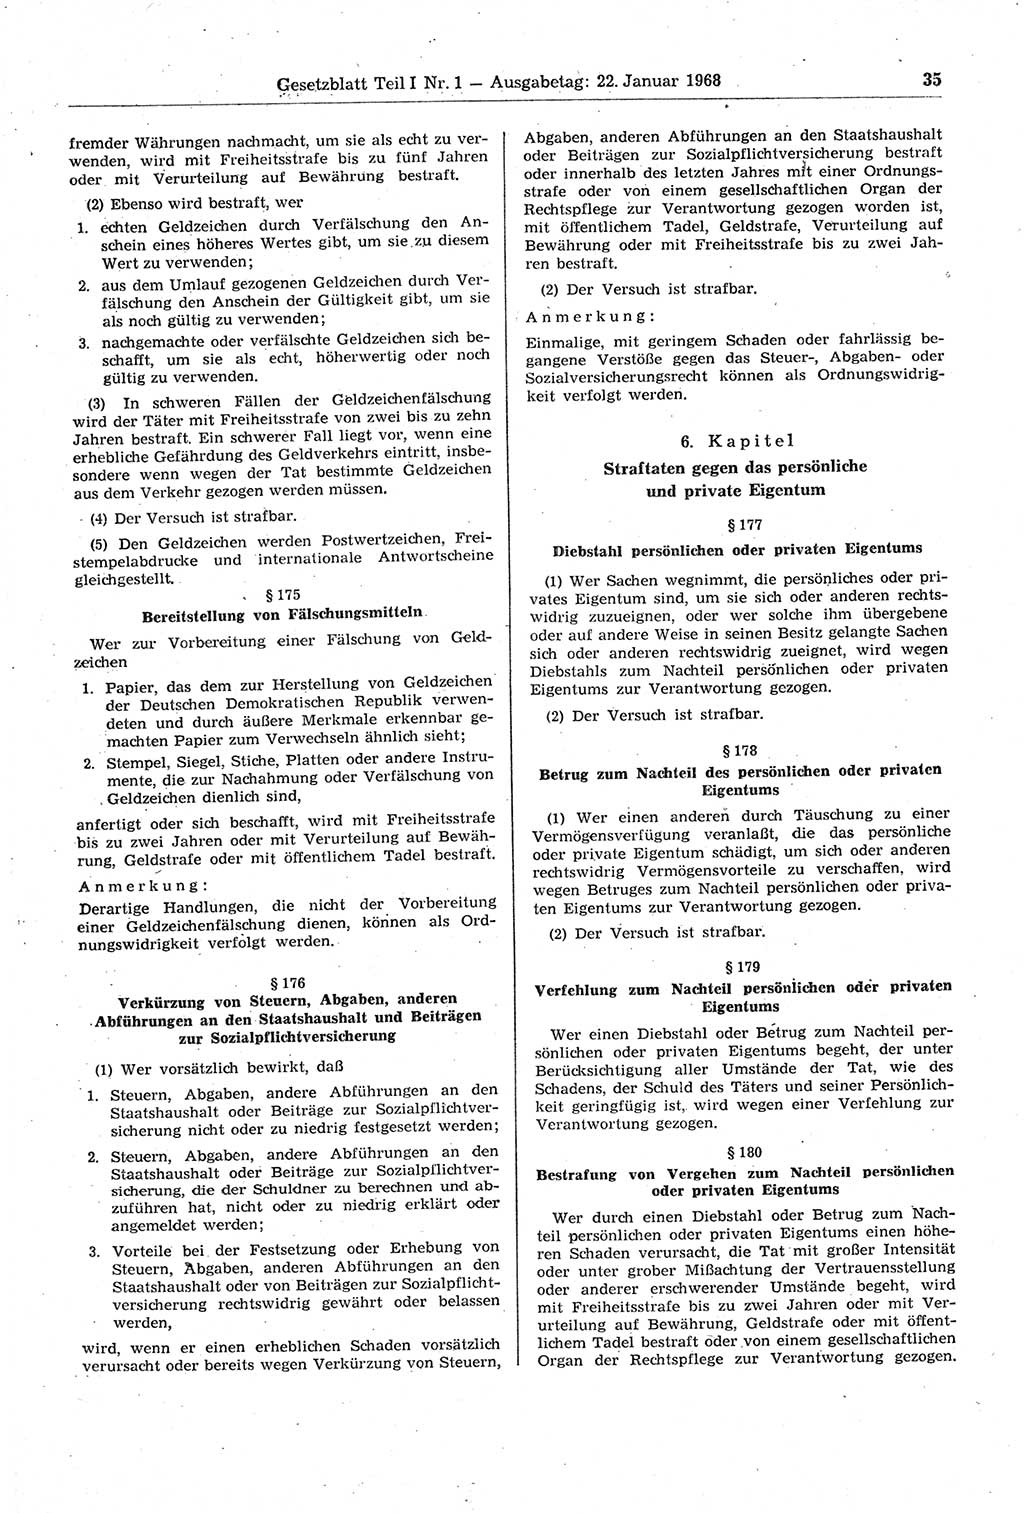 Gesetzblatt (GBl.) der Deutschen Demokratischen Republik (DDR) Teil Ⅰ 1968, Seite 35 (GBl. DDR Ⅰ 1968, S. 35)